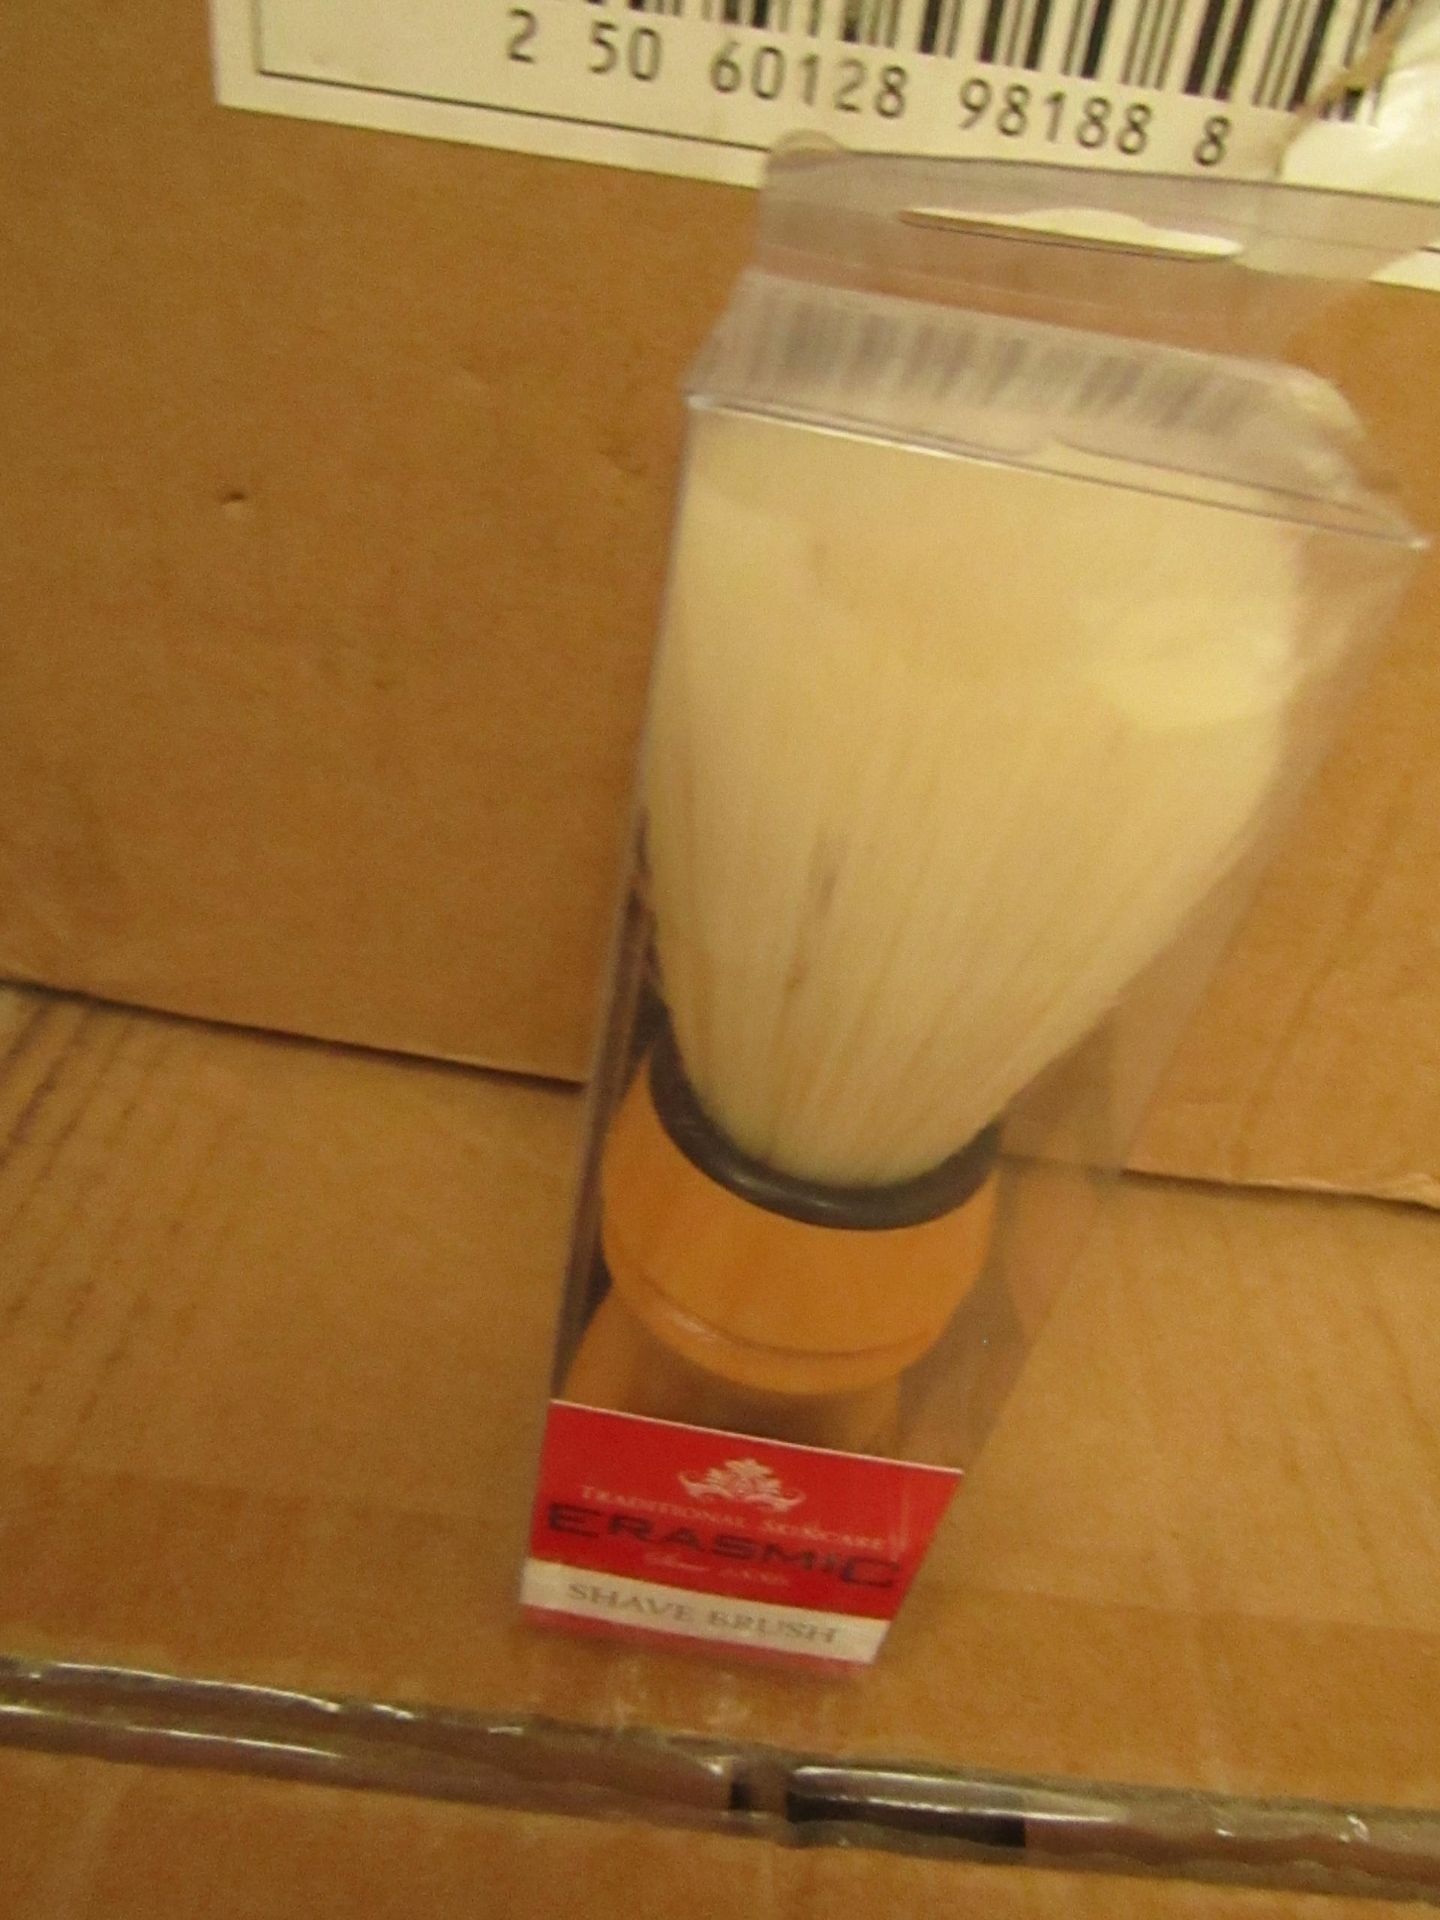 32 packs of 3 Erasmic Shave Brushes. Unused & Packaged.